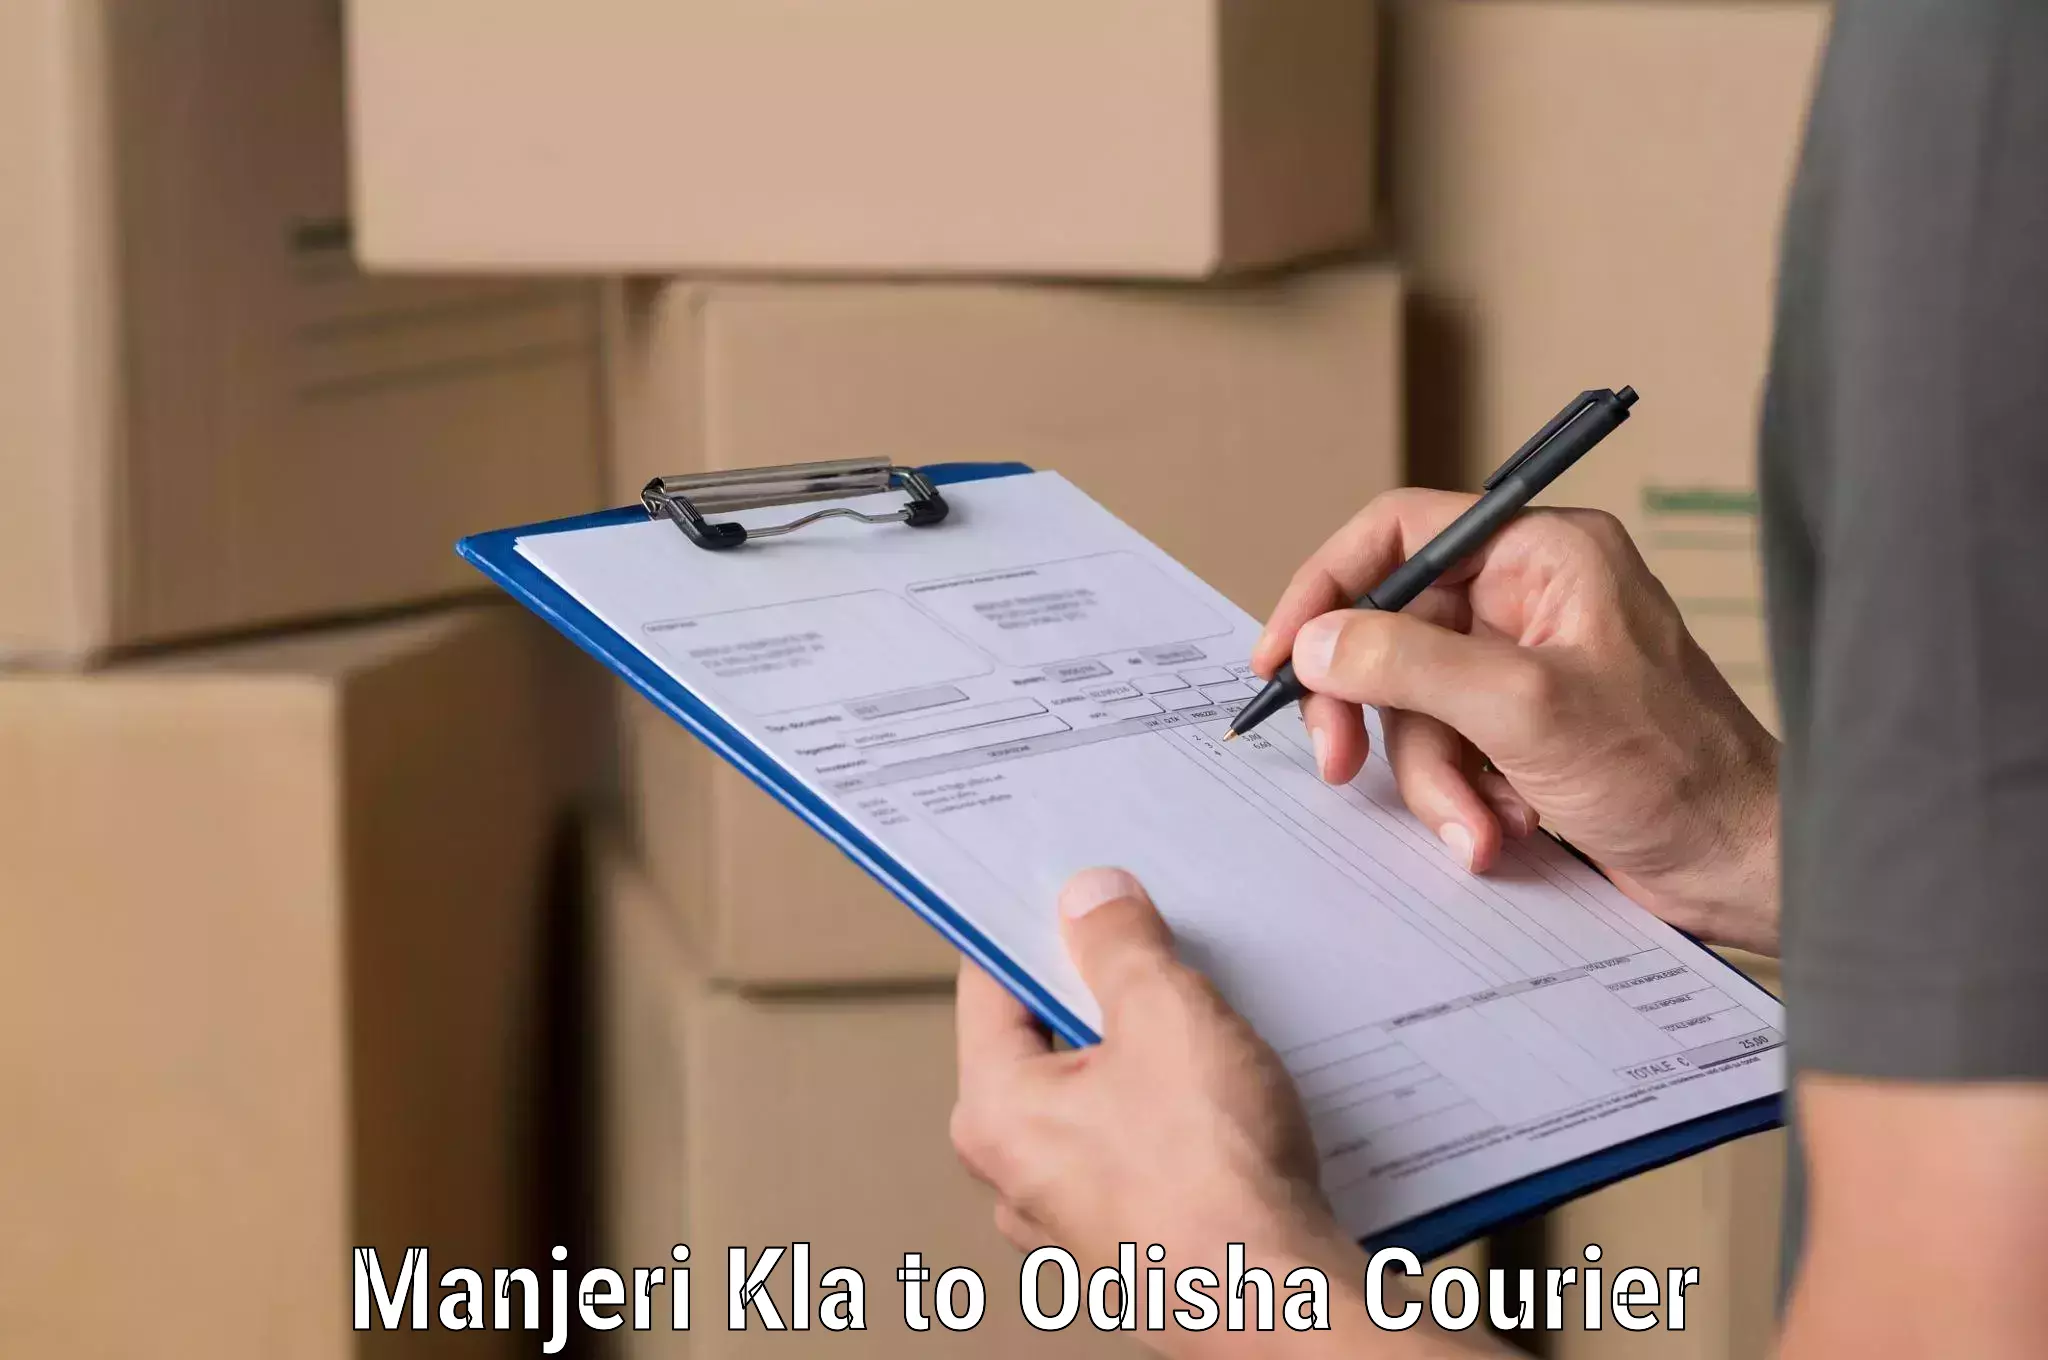 Professional courier handling Manjeri Kla to Kesinga